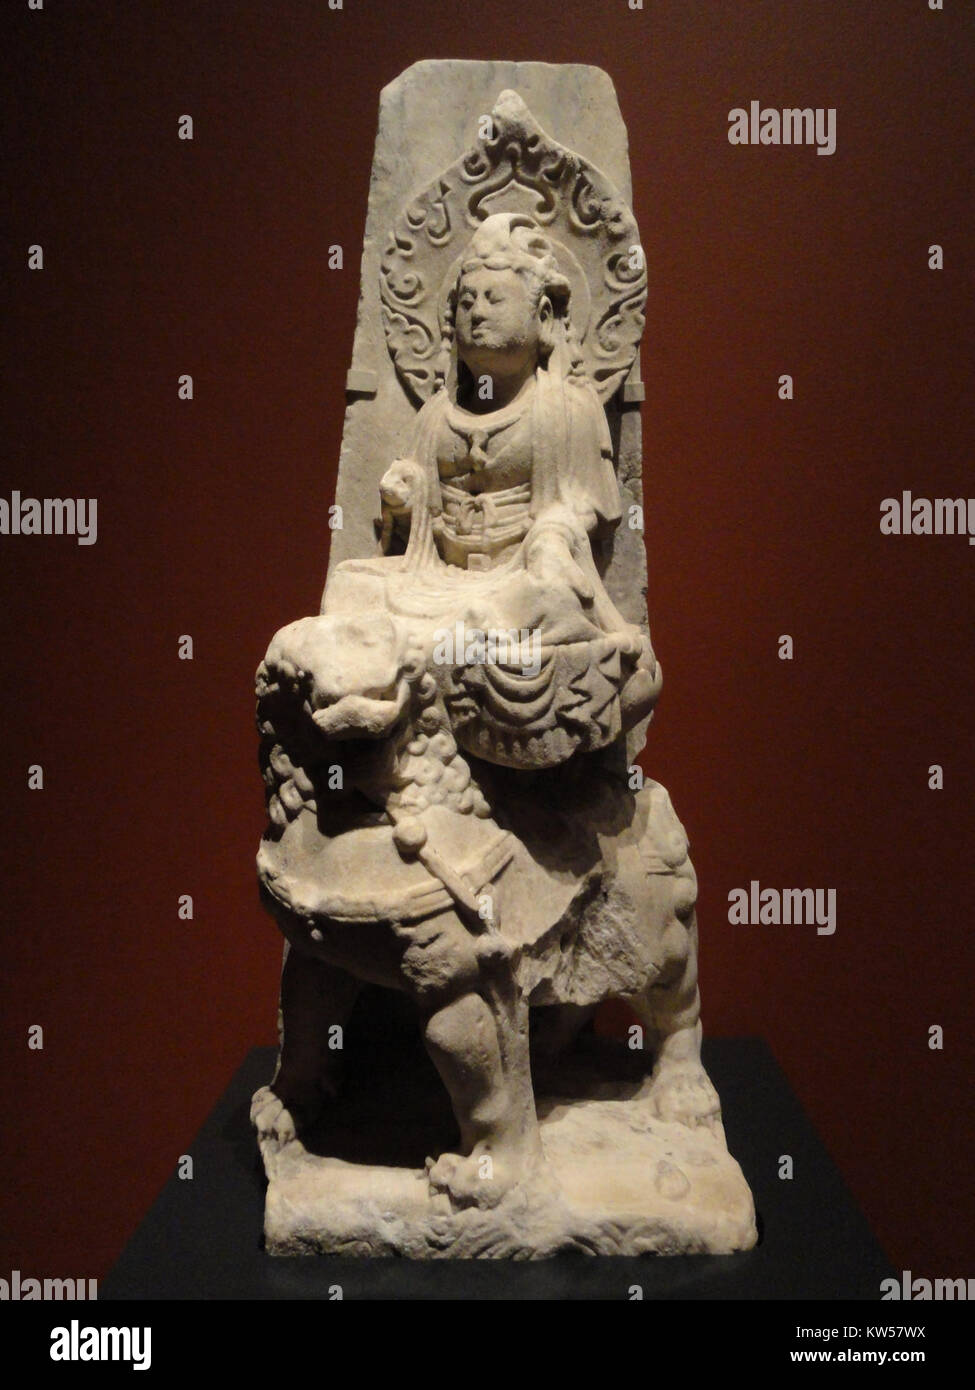 Wenshu Boddhisattva (Manjushri) seduto su un leone, Baoding, nella provincia di Hebei, Cina, Dinastia Liao, c. Xi secolo, marmo San Diego Museum of Art DSC06497 Foto Stock